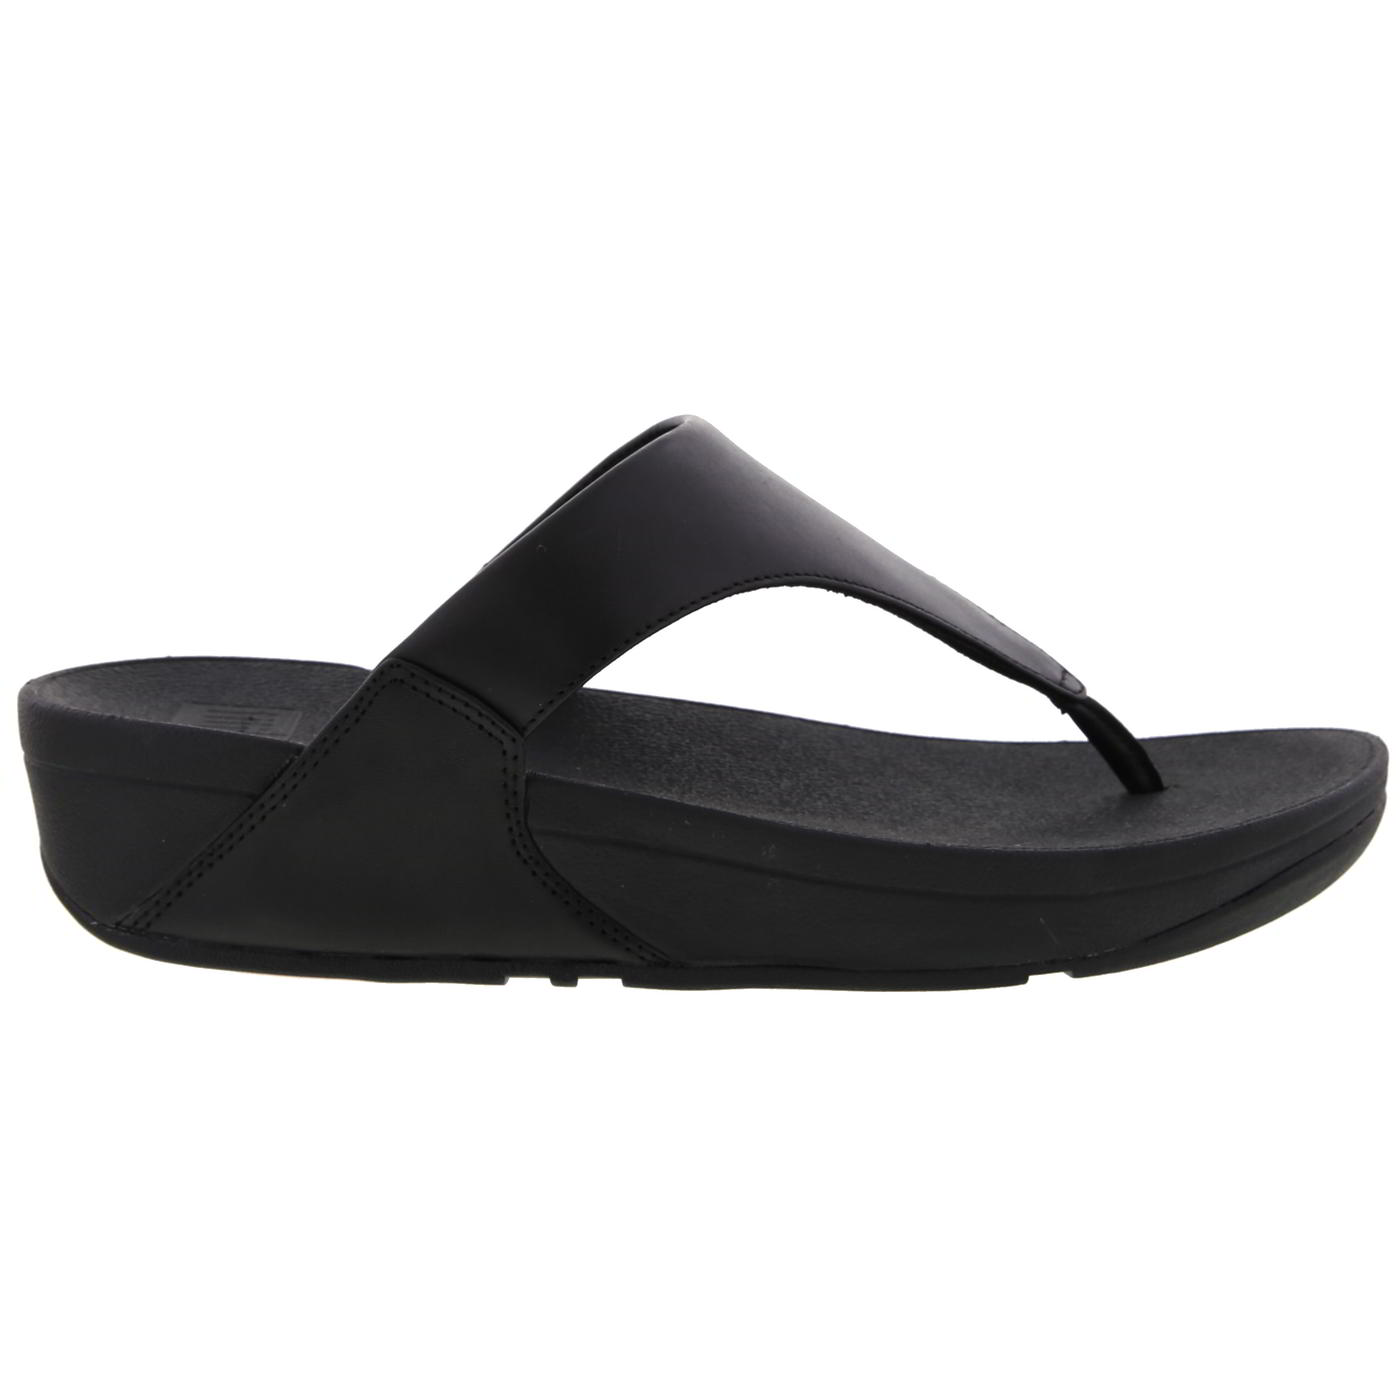 FitFlop Women's Lulu Toe Post Leather Flip Flop Sandals - UK 6.5